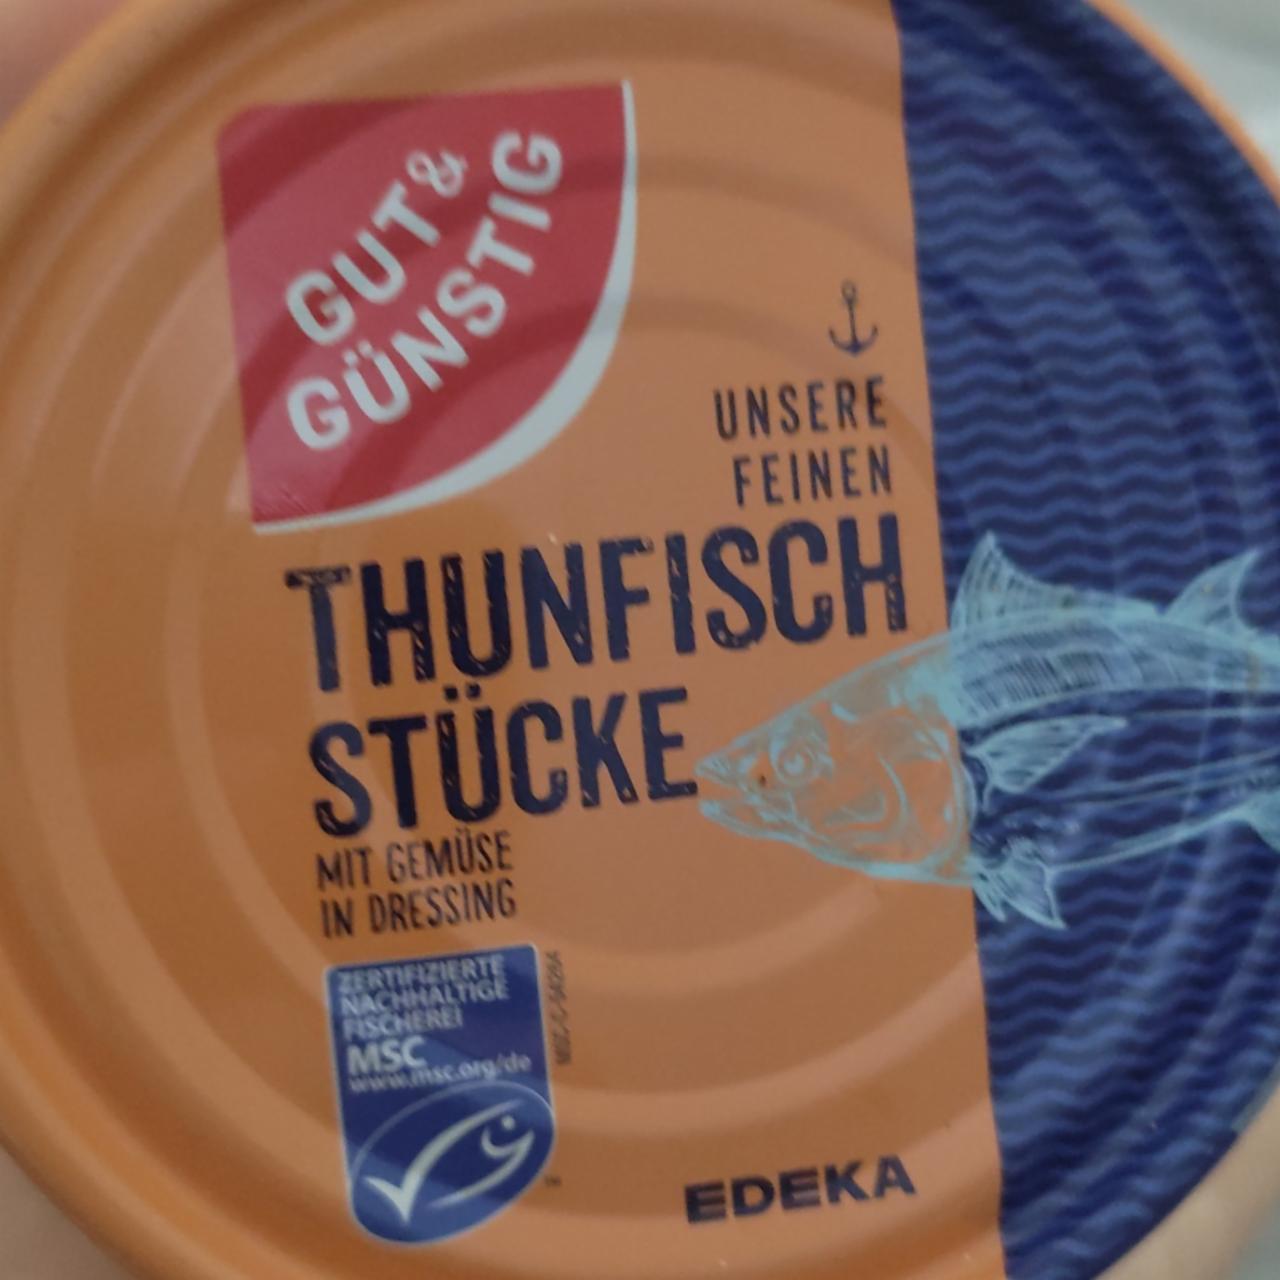 Fotografie - Thunfisch stücke mit gemüse in dressing Gut & Günstig